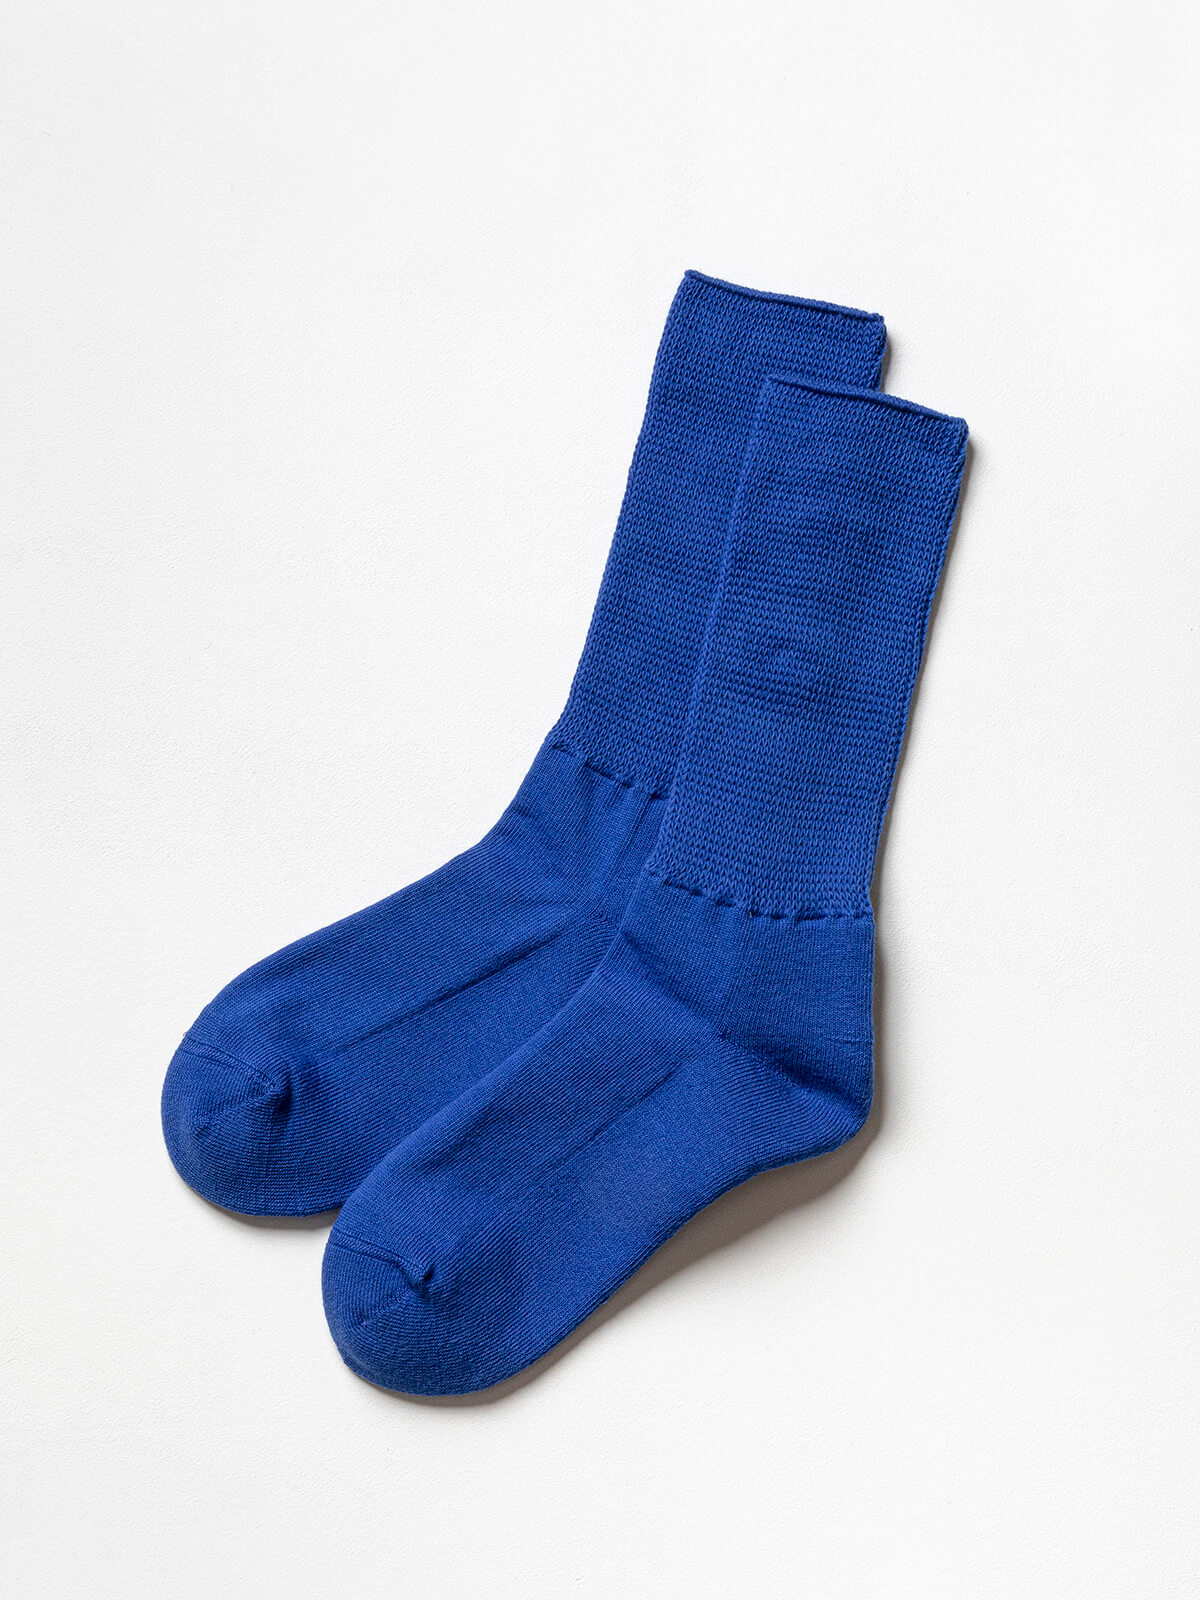 当たりつきギフト専用靴下のLUCKY SOCKS（ラッキーソックス）のRelax Pile Socks（リラックスパイルソックス）のブルー